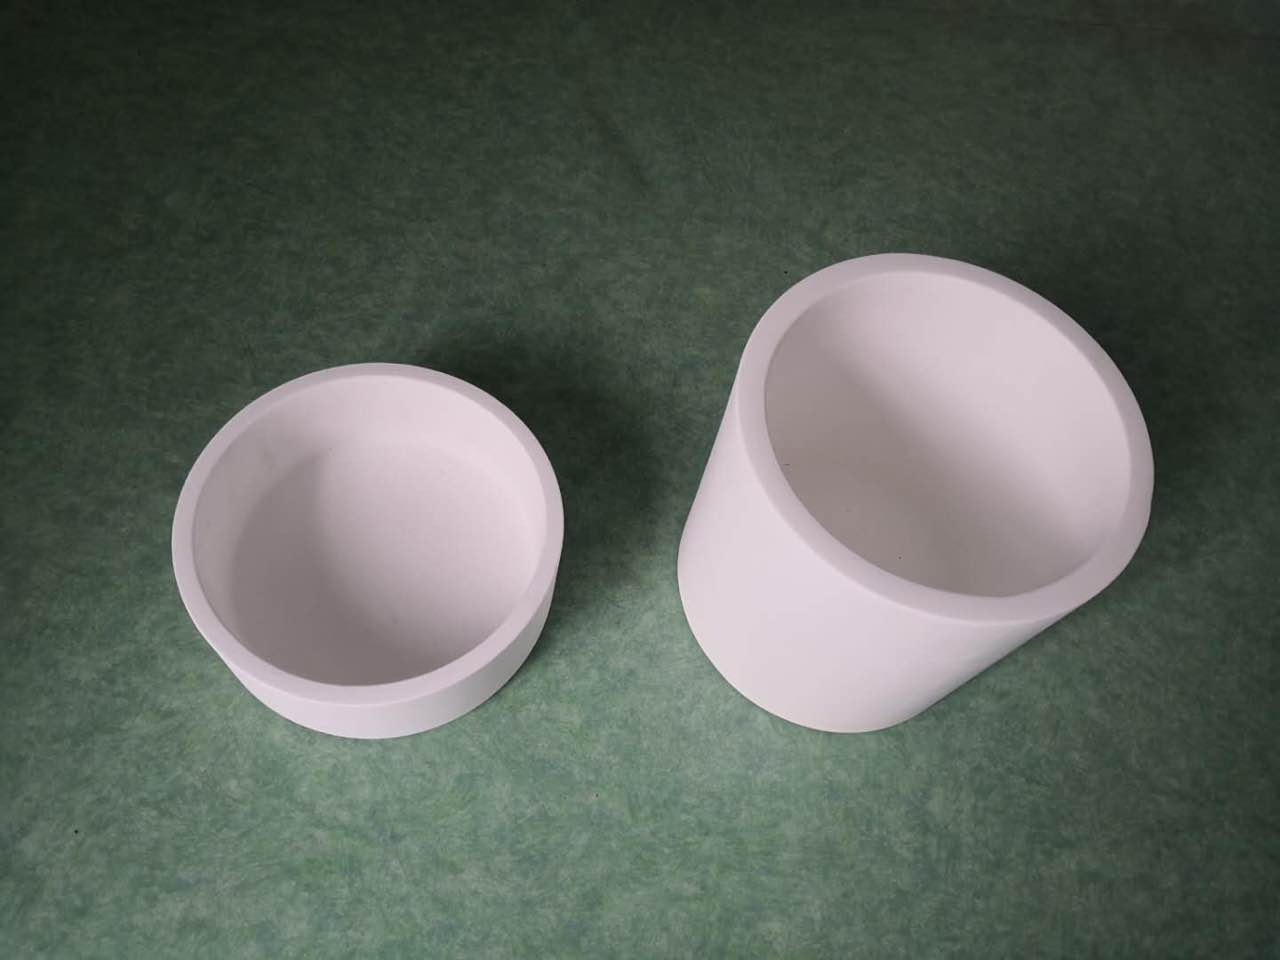 Fused Silica Ceramic Crucible